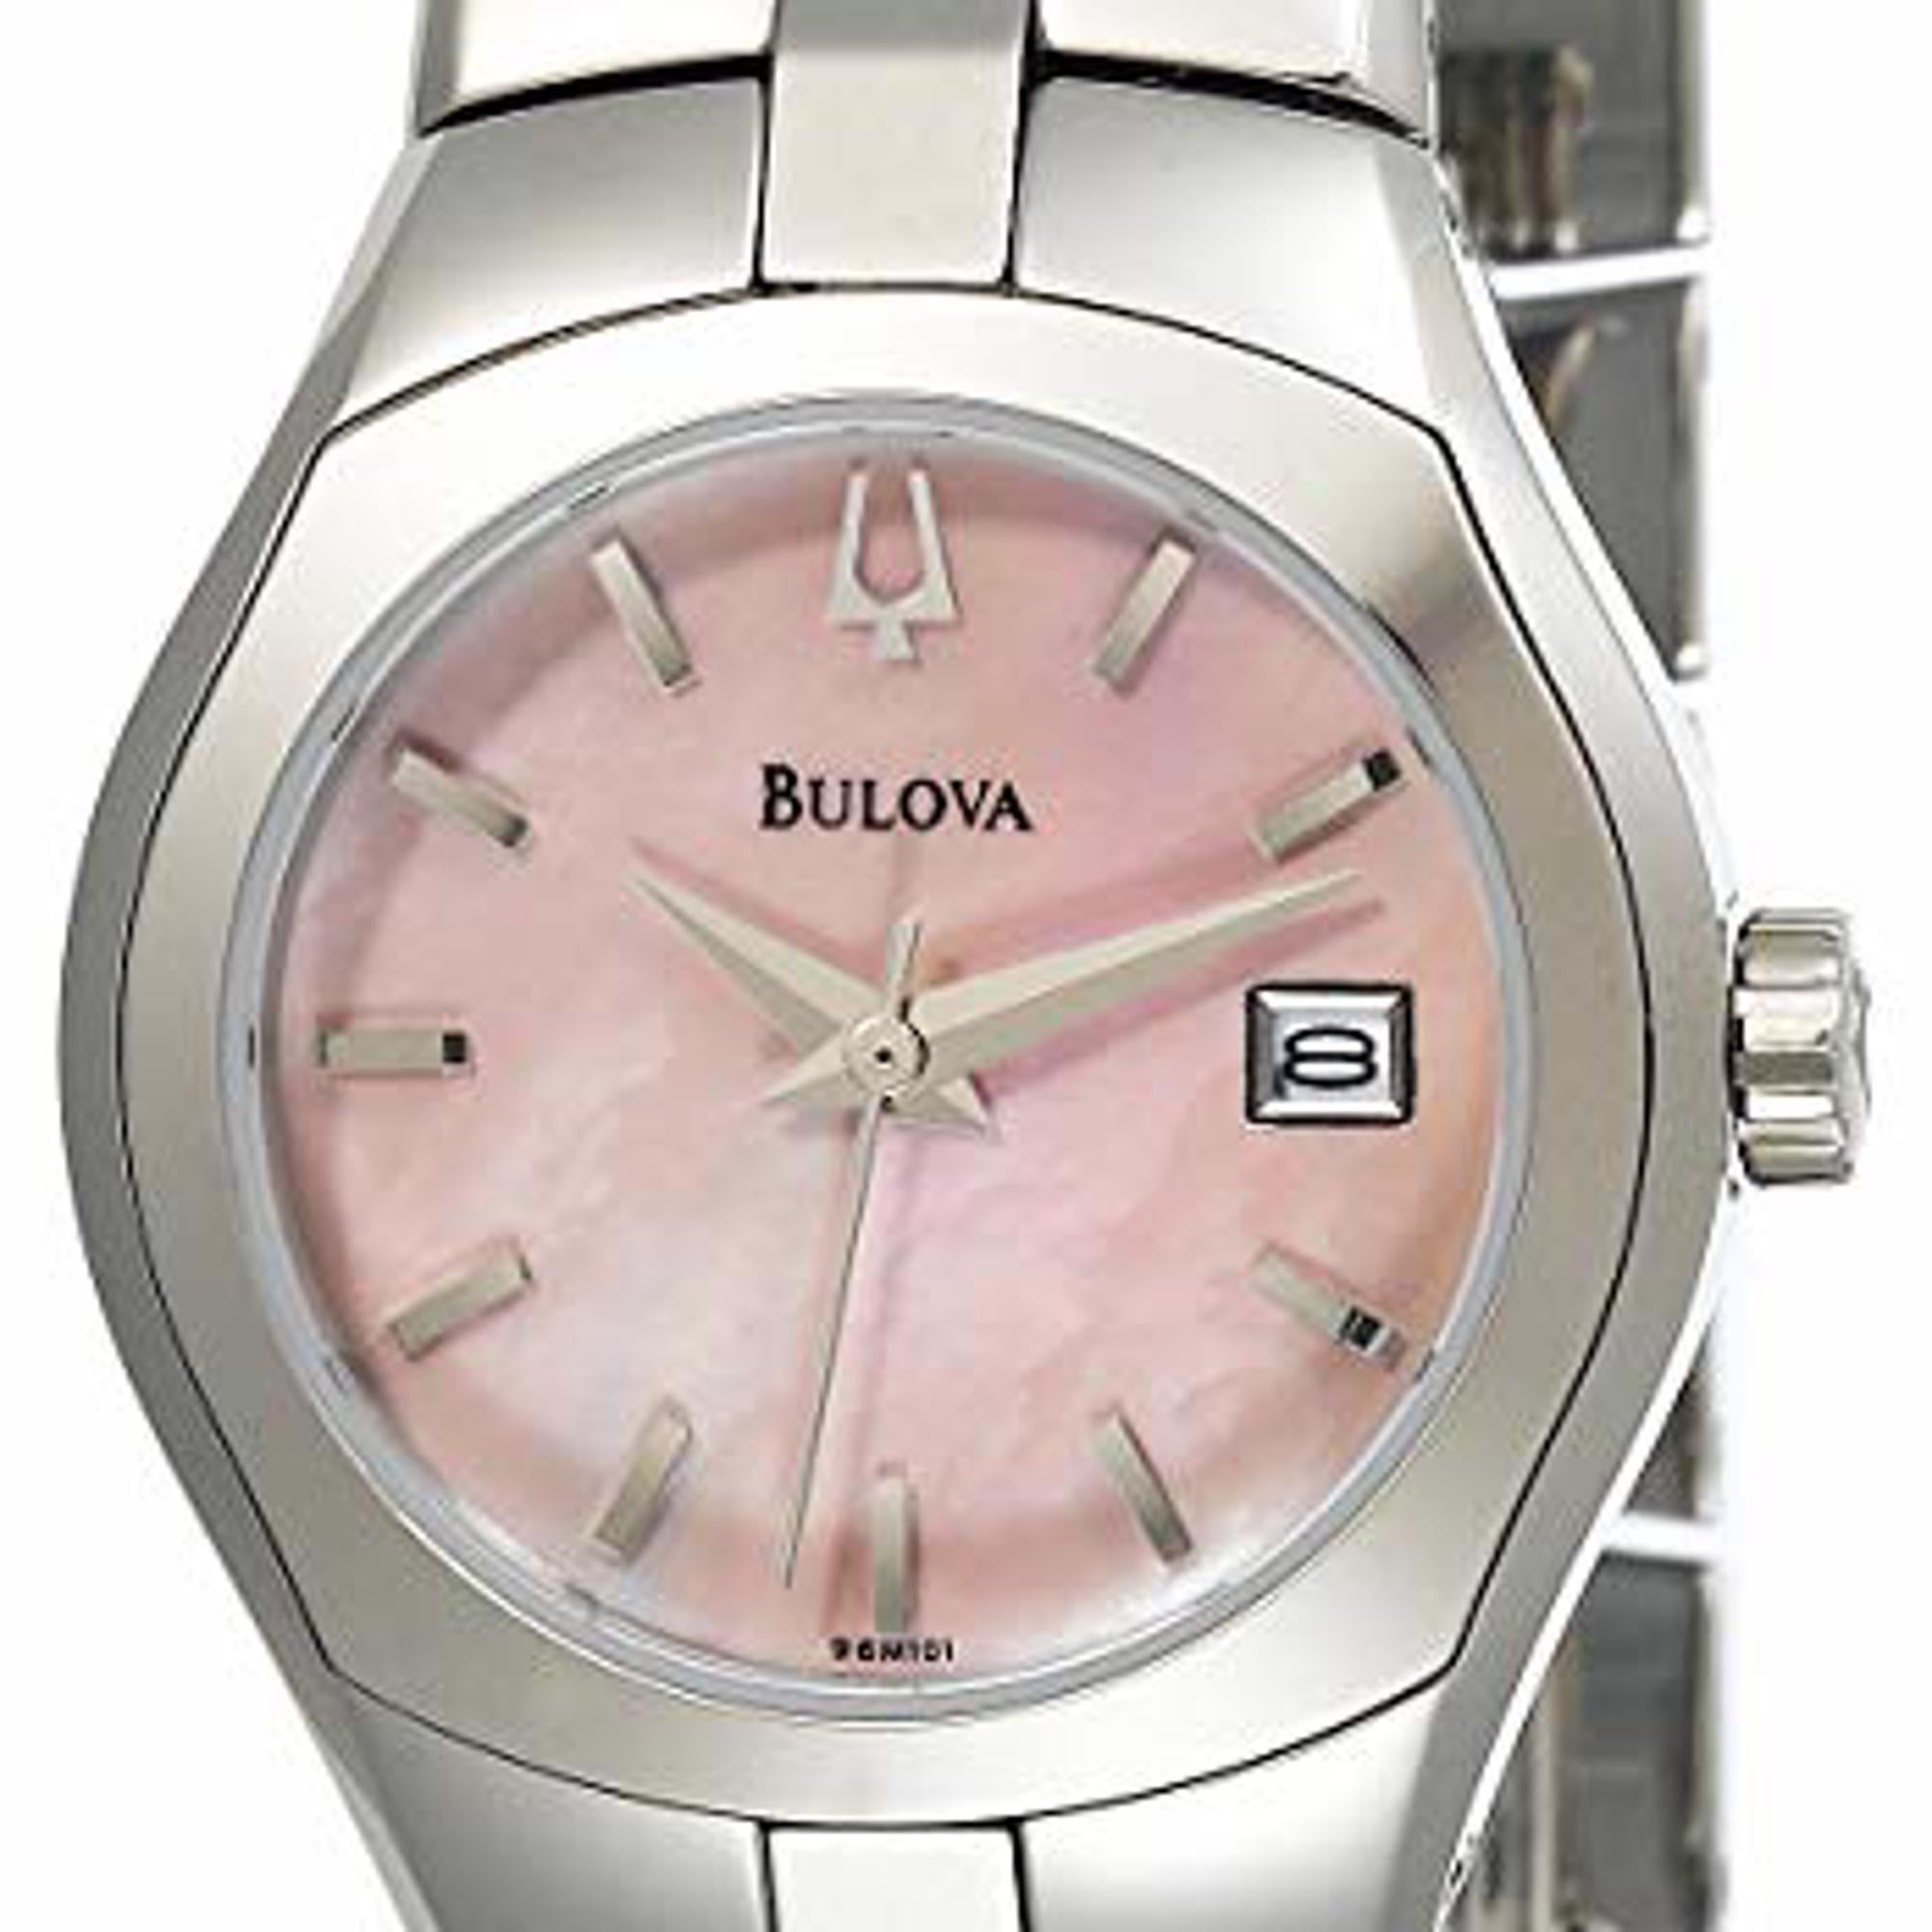 bulova women's watch pink face